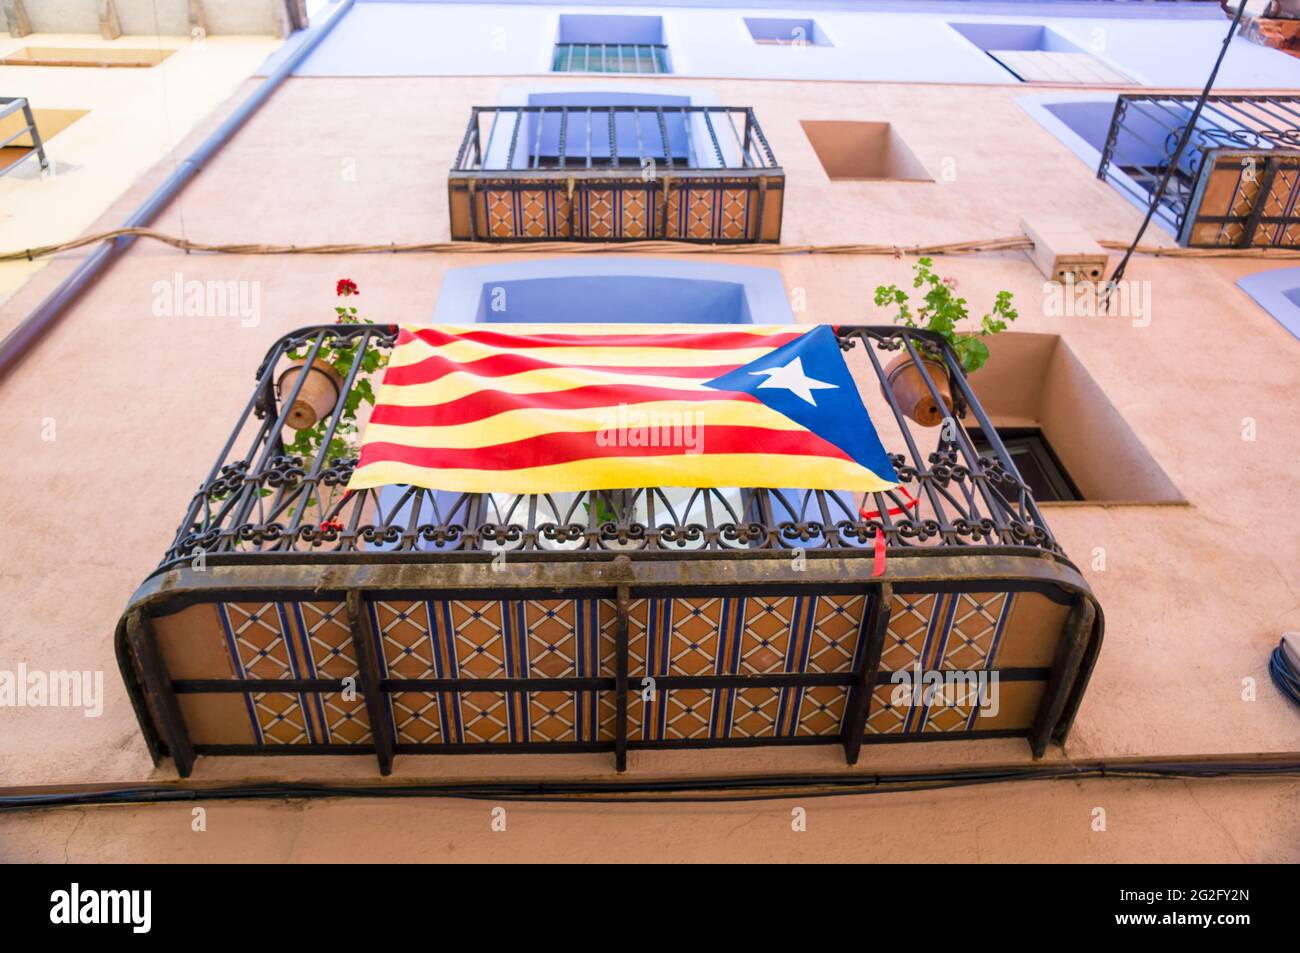 Photo à angle bas d'ESTELADA, le drapeau indépendant catalan sur un balcon de bâtiment Banque D'Images